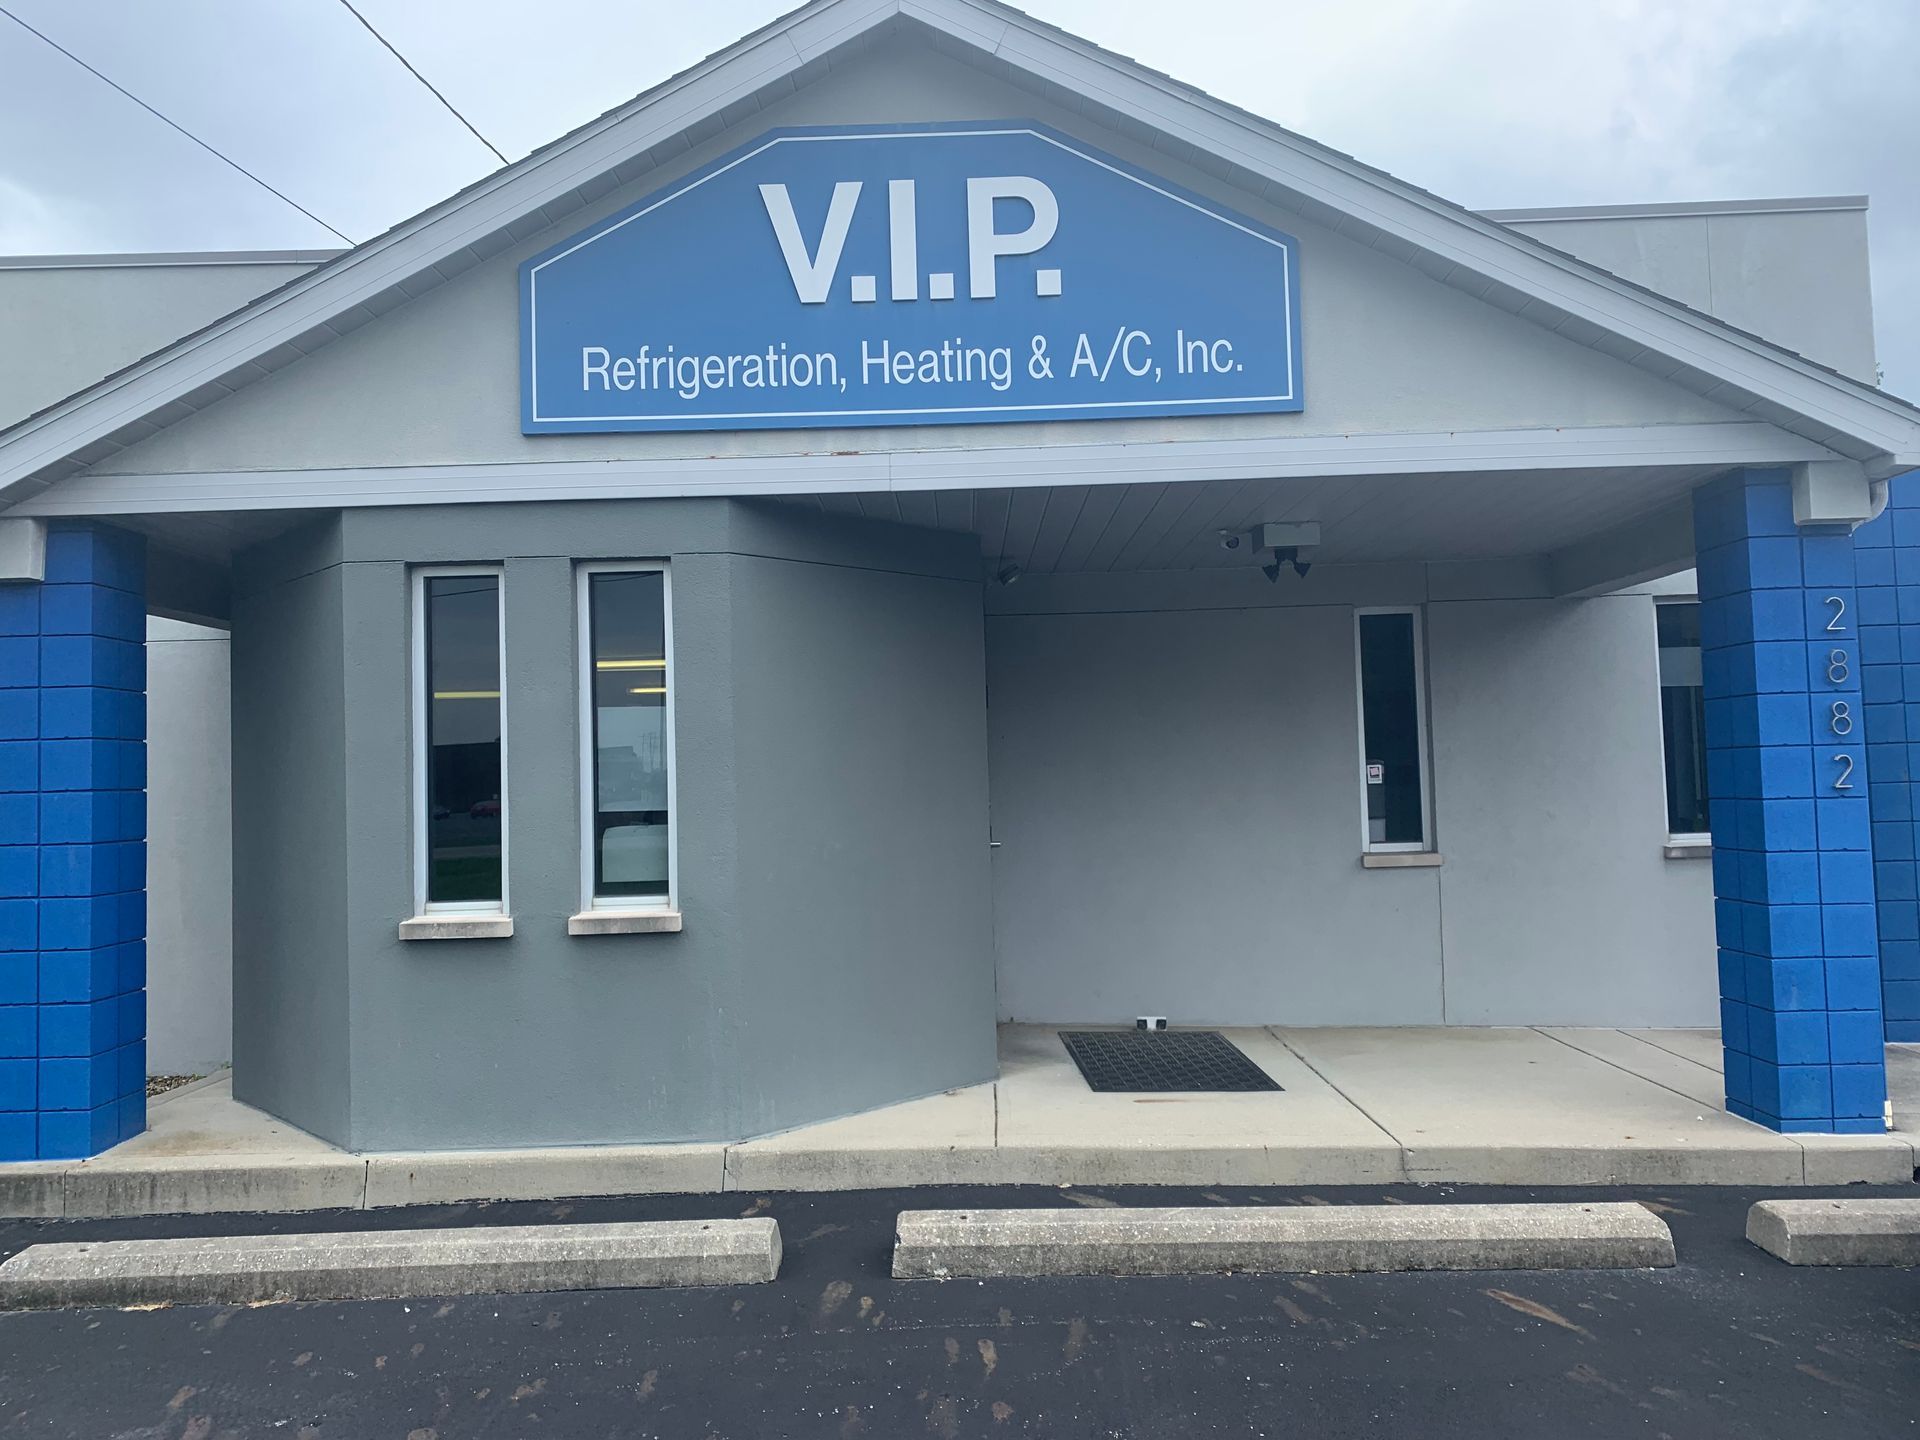 V.I.P Refrigeration, Heating & A/C, Inc., Columbus, OH